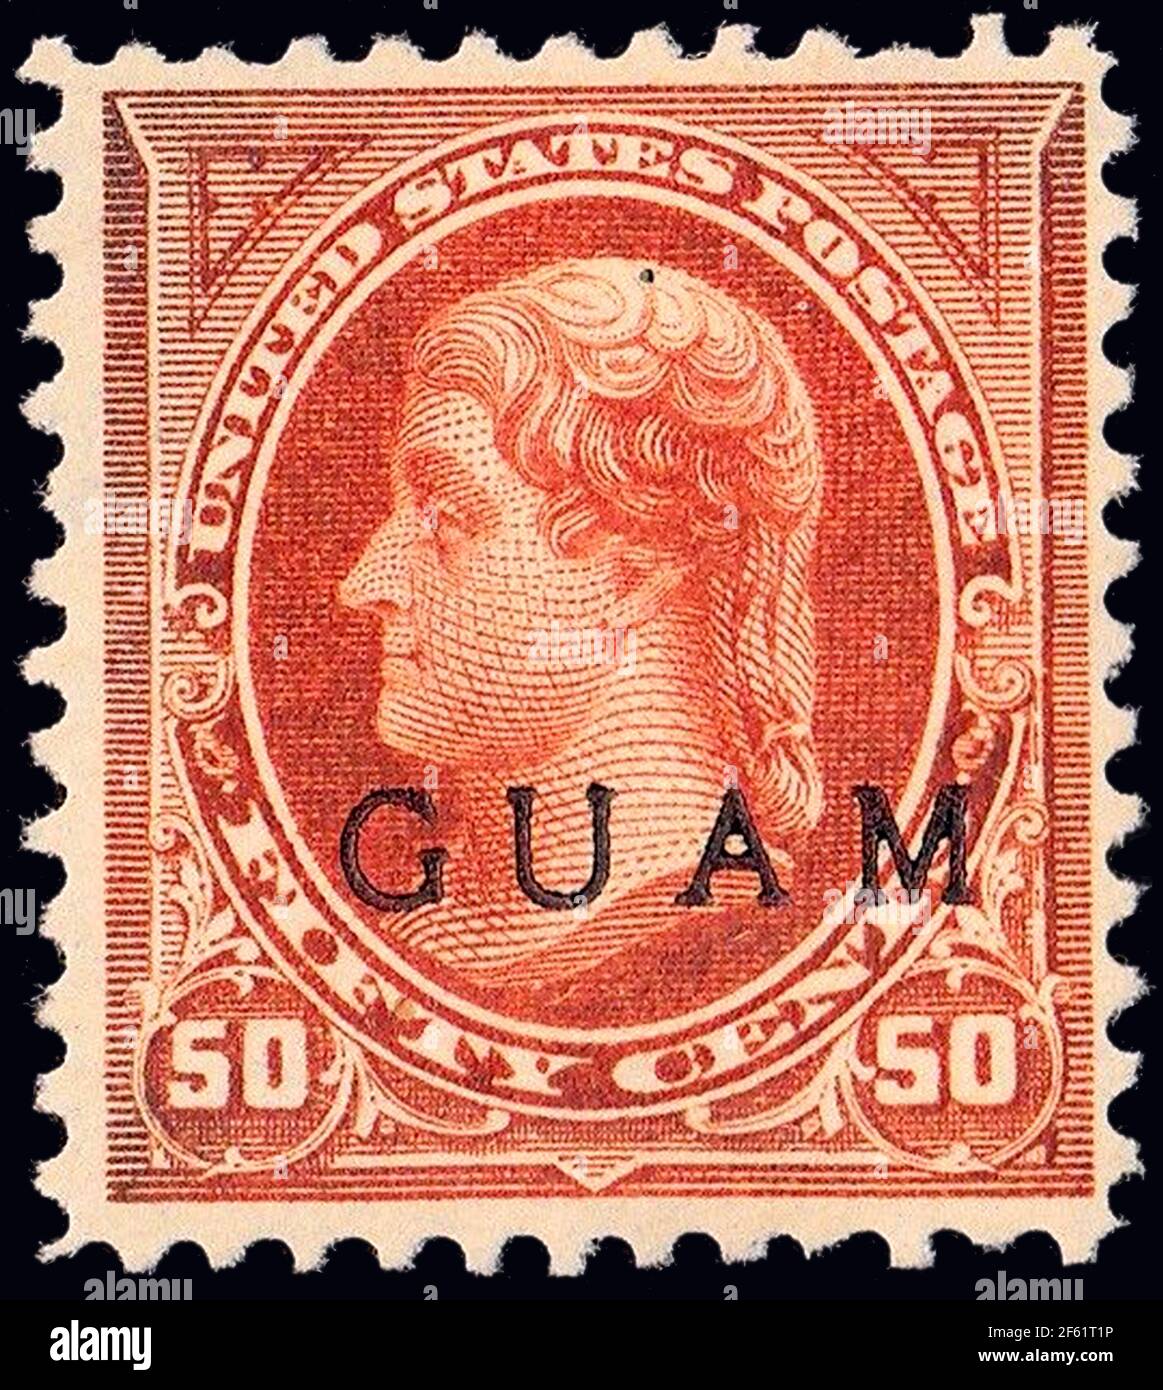 Guam, timbre de poste, 1899 Banque D'Images